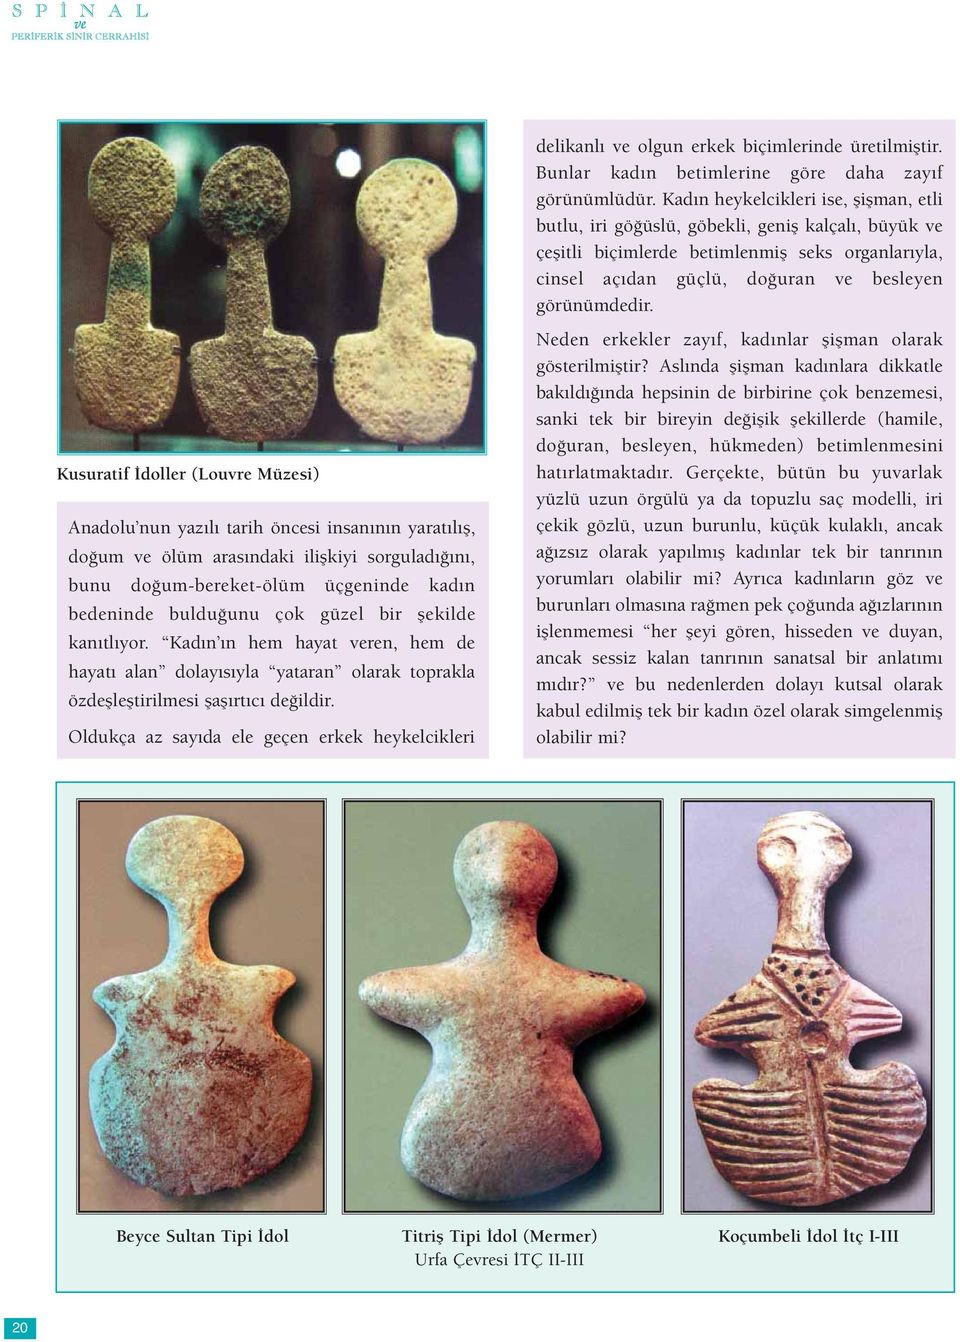 Kusuratif İdoller (Louvre Müzesi) Anadolu nun yazılı tarih öncesi insanının yaratılış, doğum ve ölüm arasındaki ilişkiyi sorguladığını, bunu doğum-bereket-ölüm üçgeninde kadın bedeninde bulduğunu çok